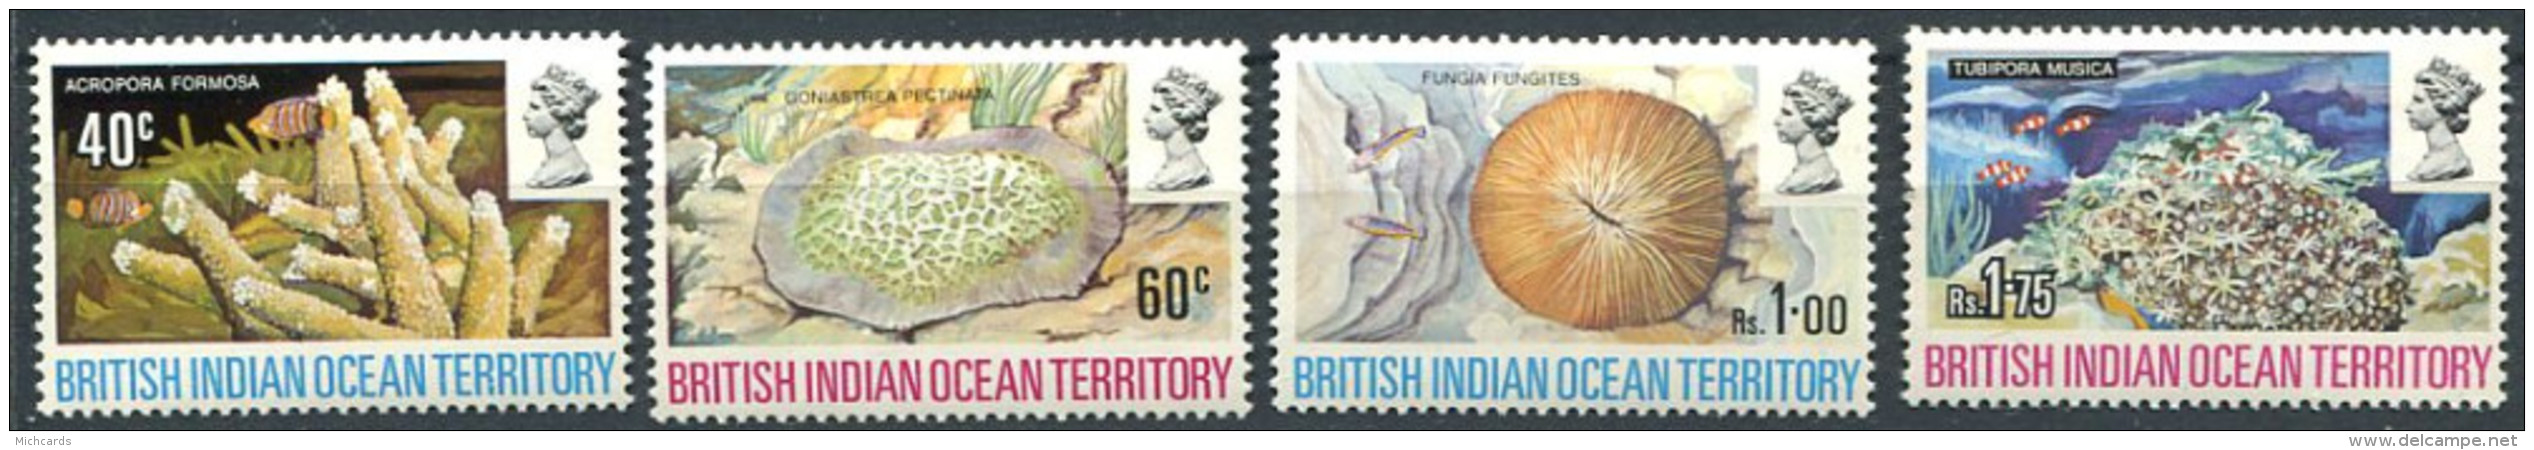 158 Territoire Britannique OCEAN INDIEN 1972 - Coraux (Yvert 44/47) Neuf ** (MNH) Sans Charniere - Territoire Britannique De L'Océan Indien